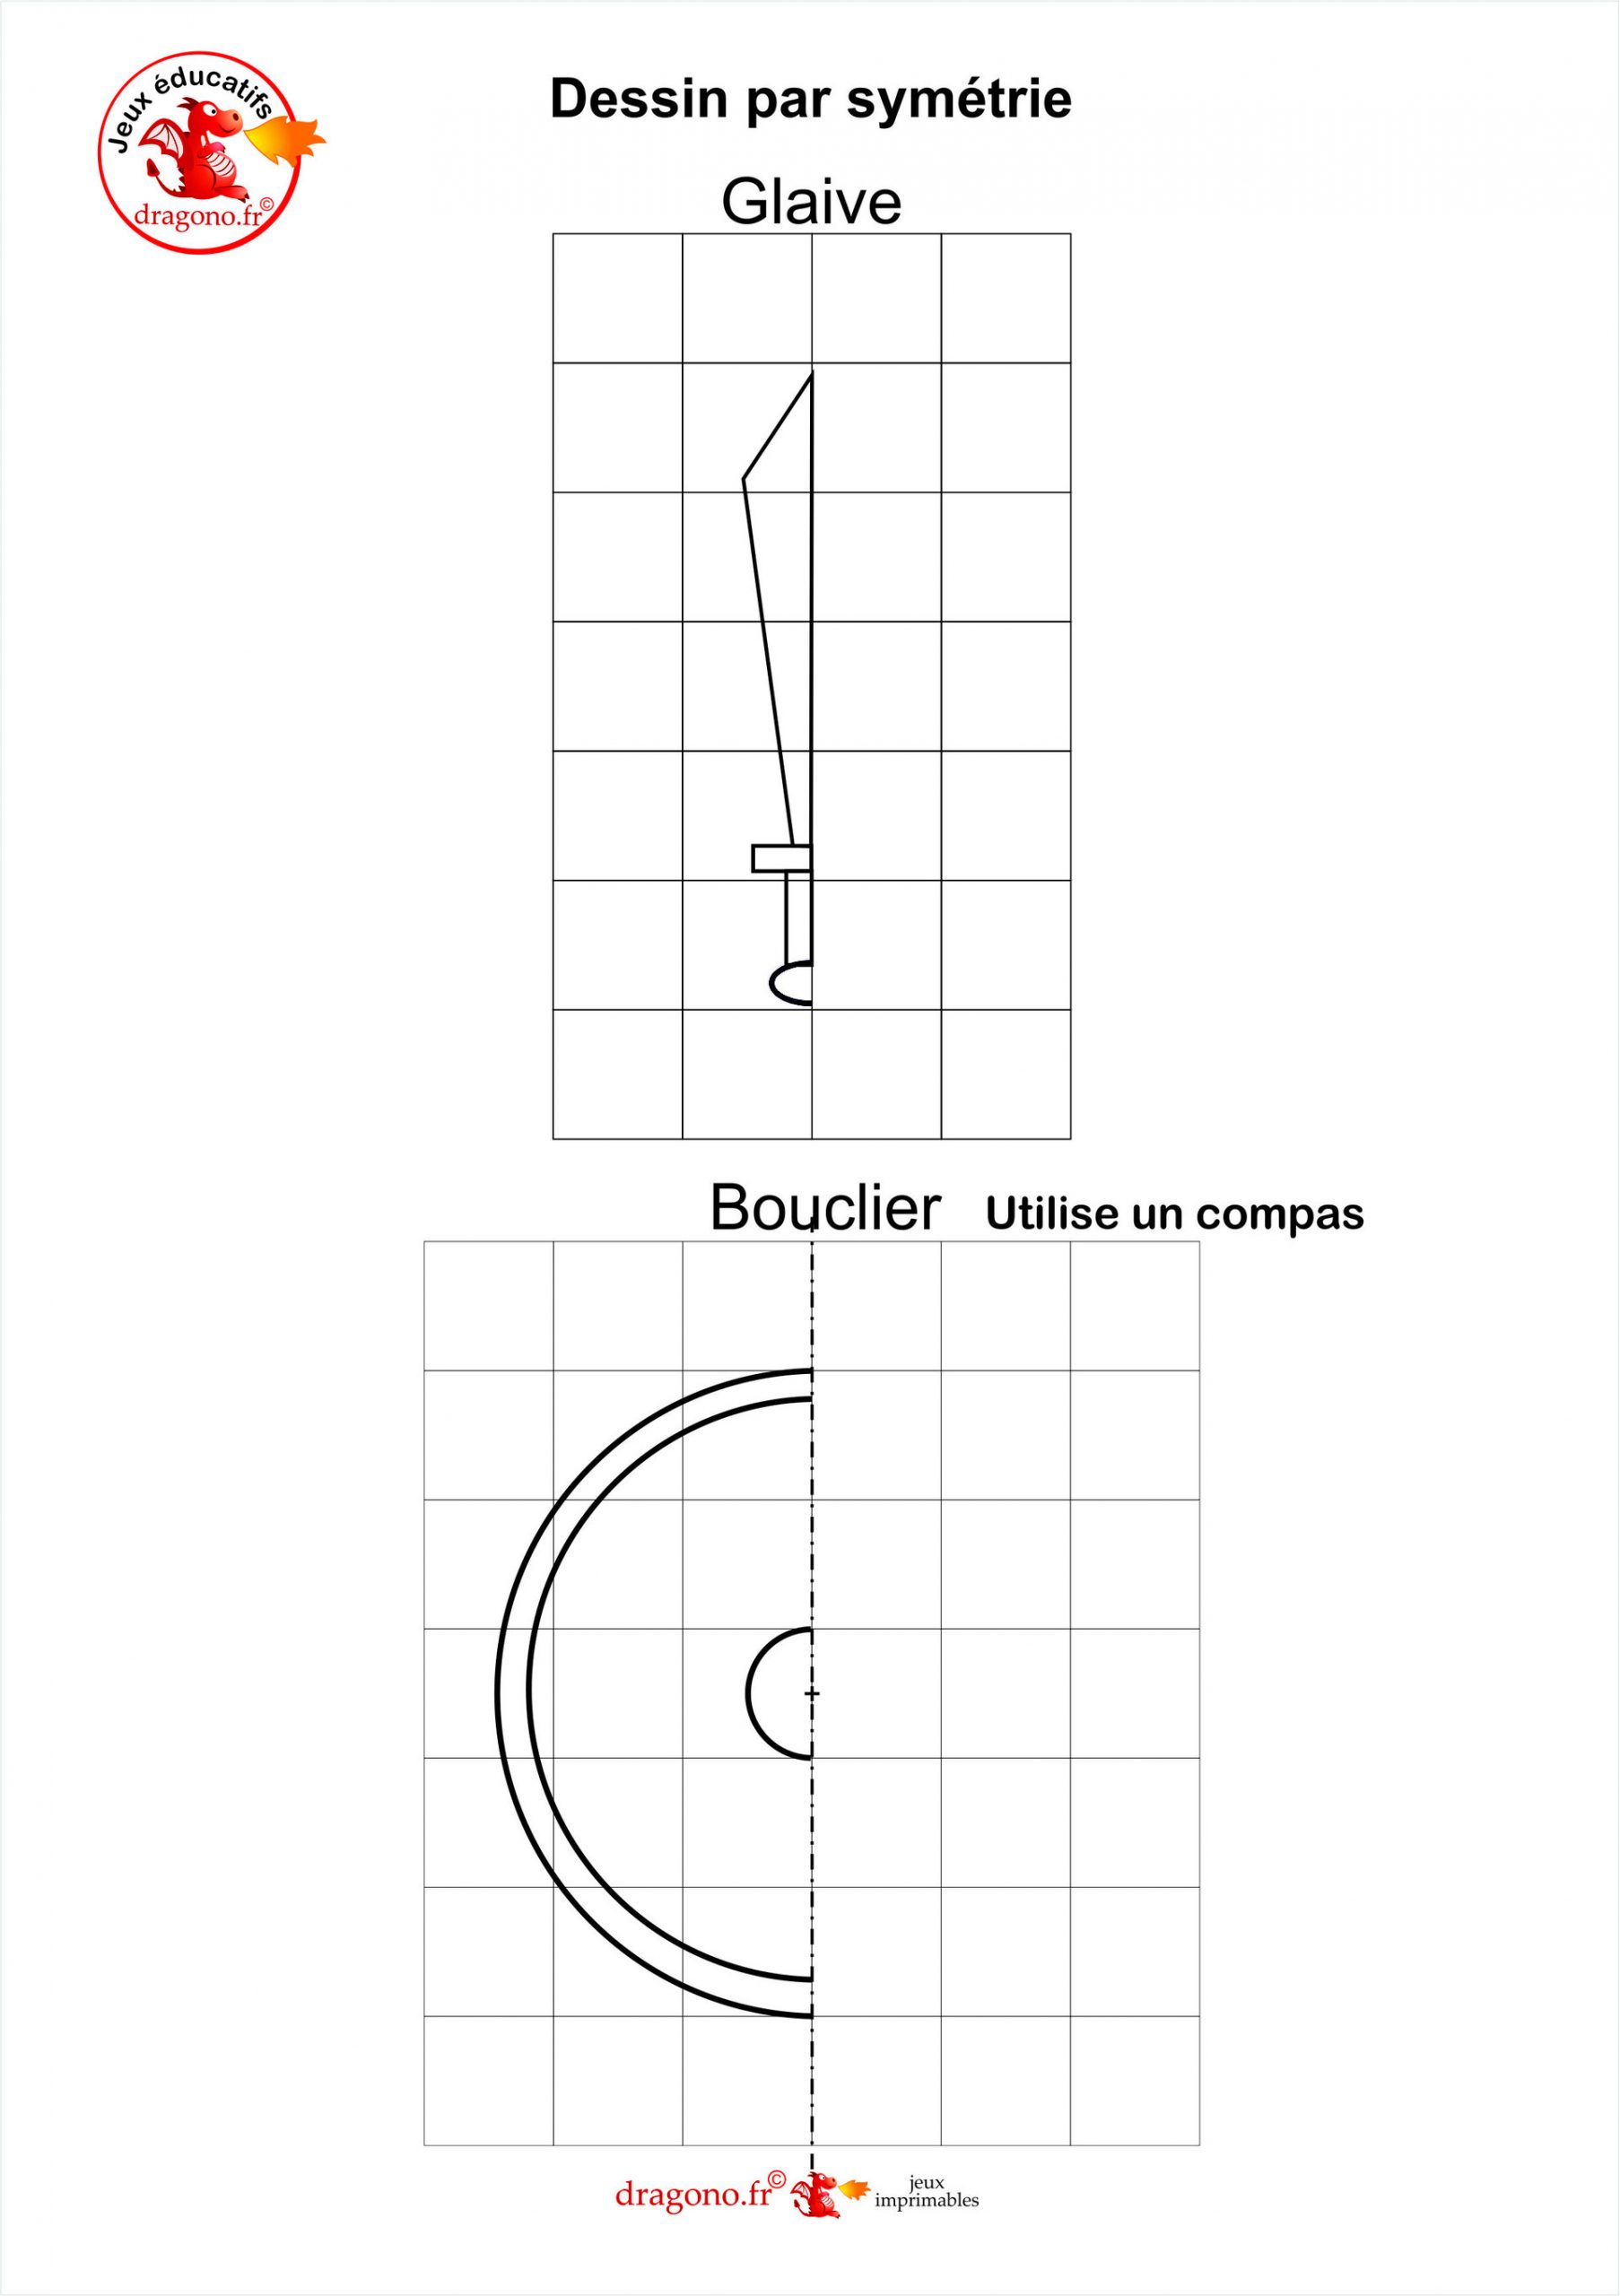 Dessin Par Symétrie - Glaive Bouclier - Dragono.fr dedans Dessin Symétrique A Imprimer